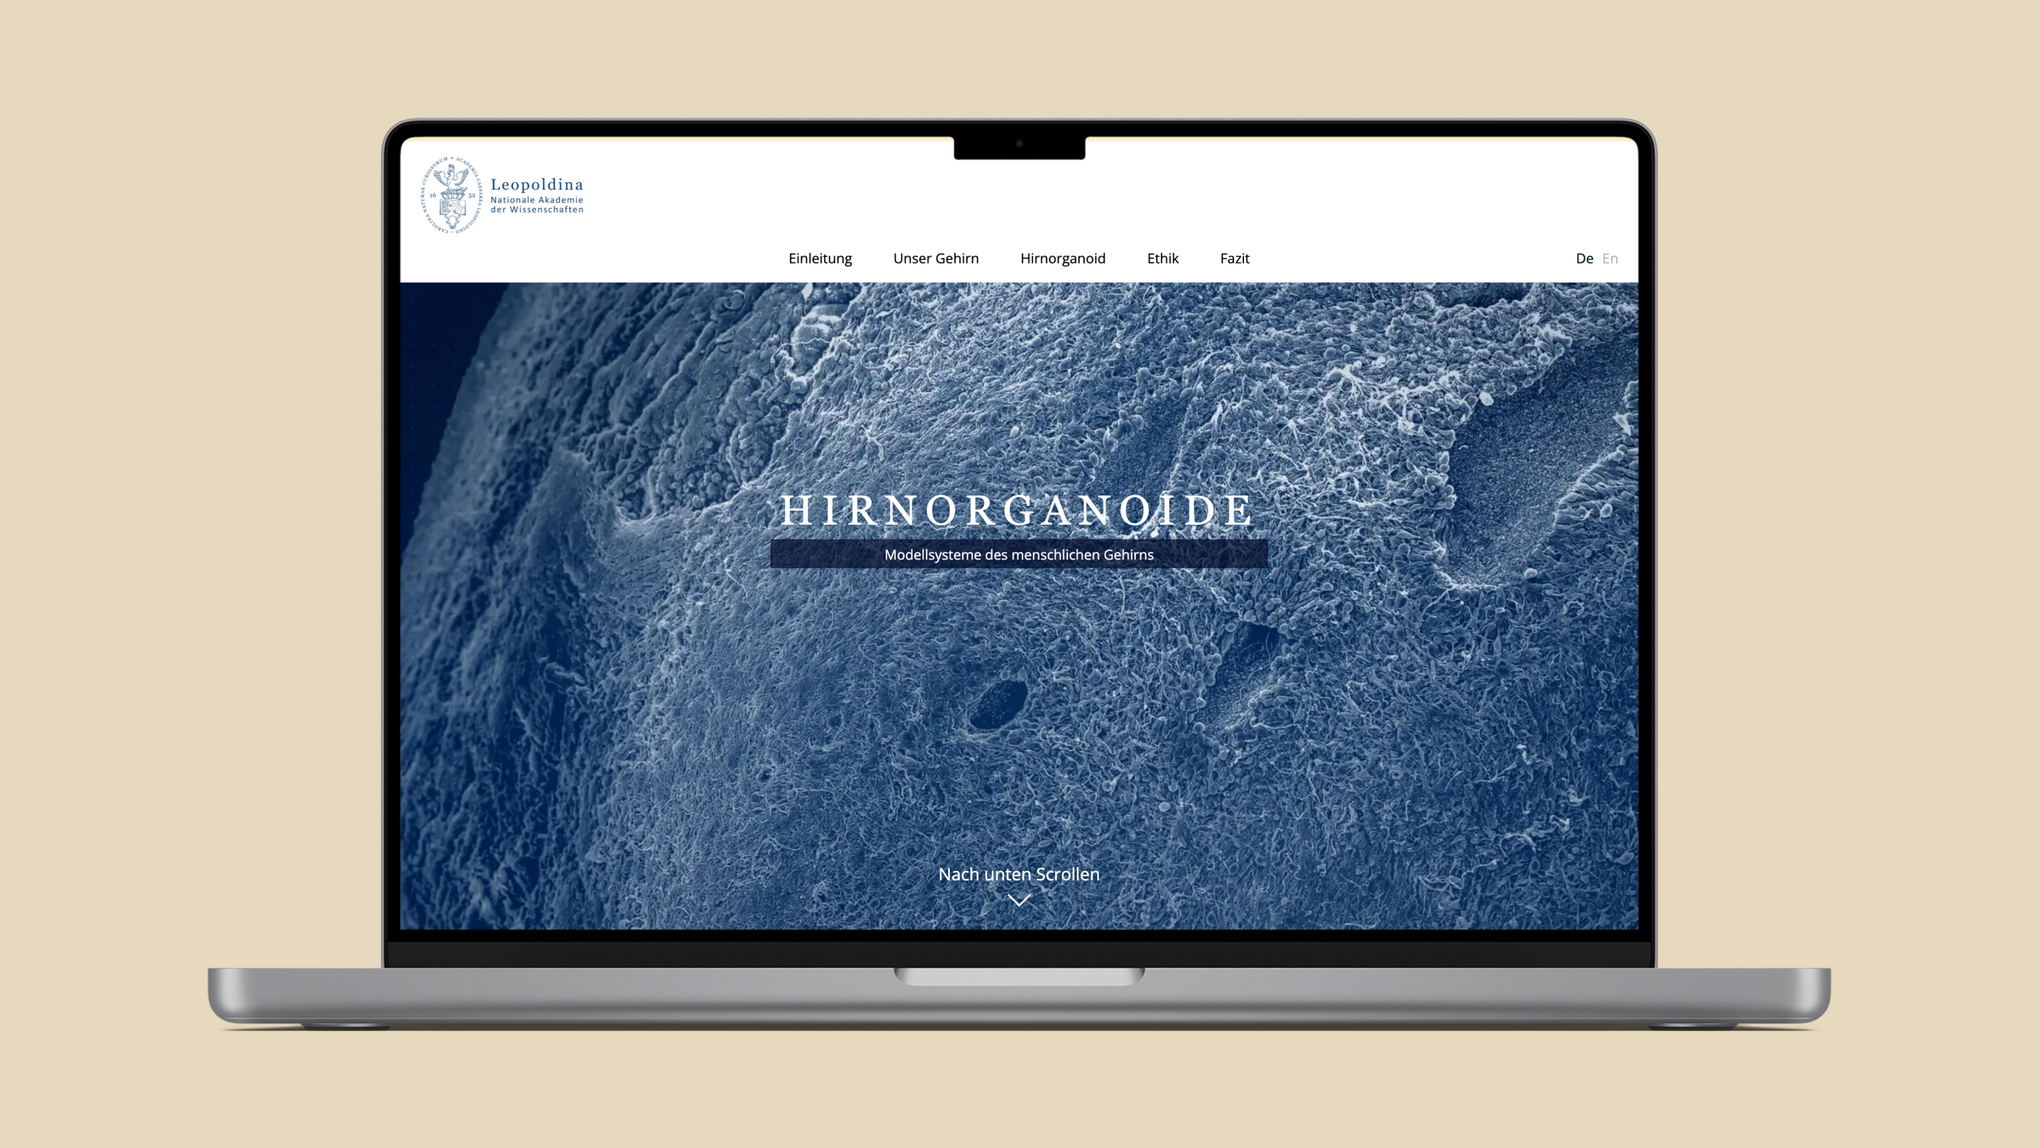 Der Startbildschirm des digitalen Dossiers zum Thema "Hirnorganoide". Im Hintergrund das Bild eines Gehirns.